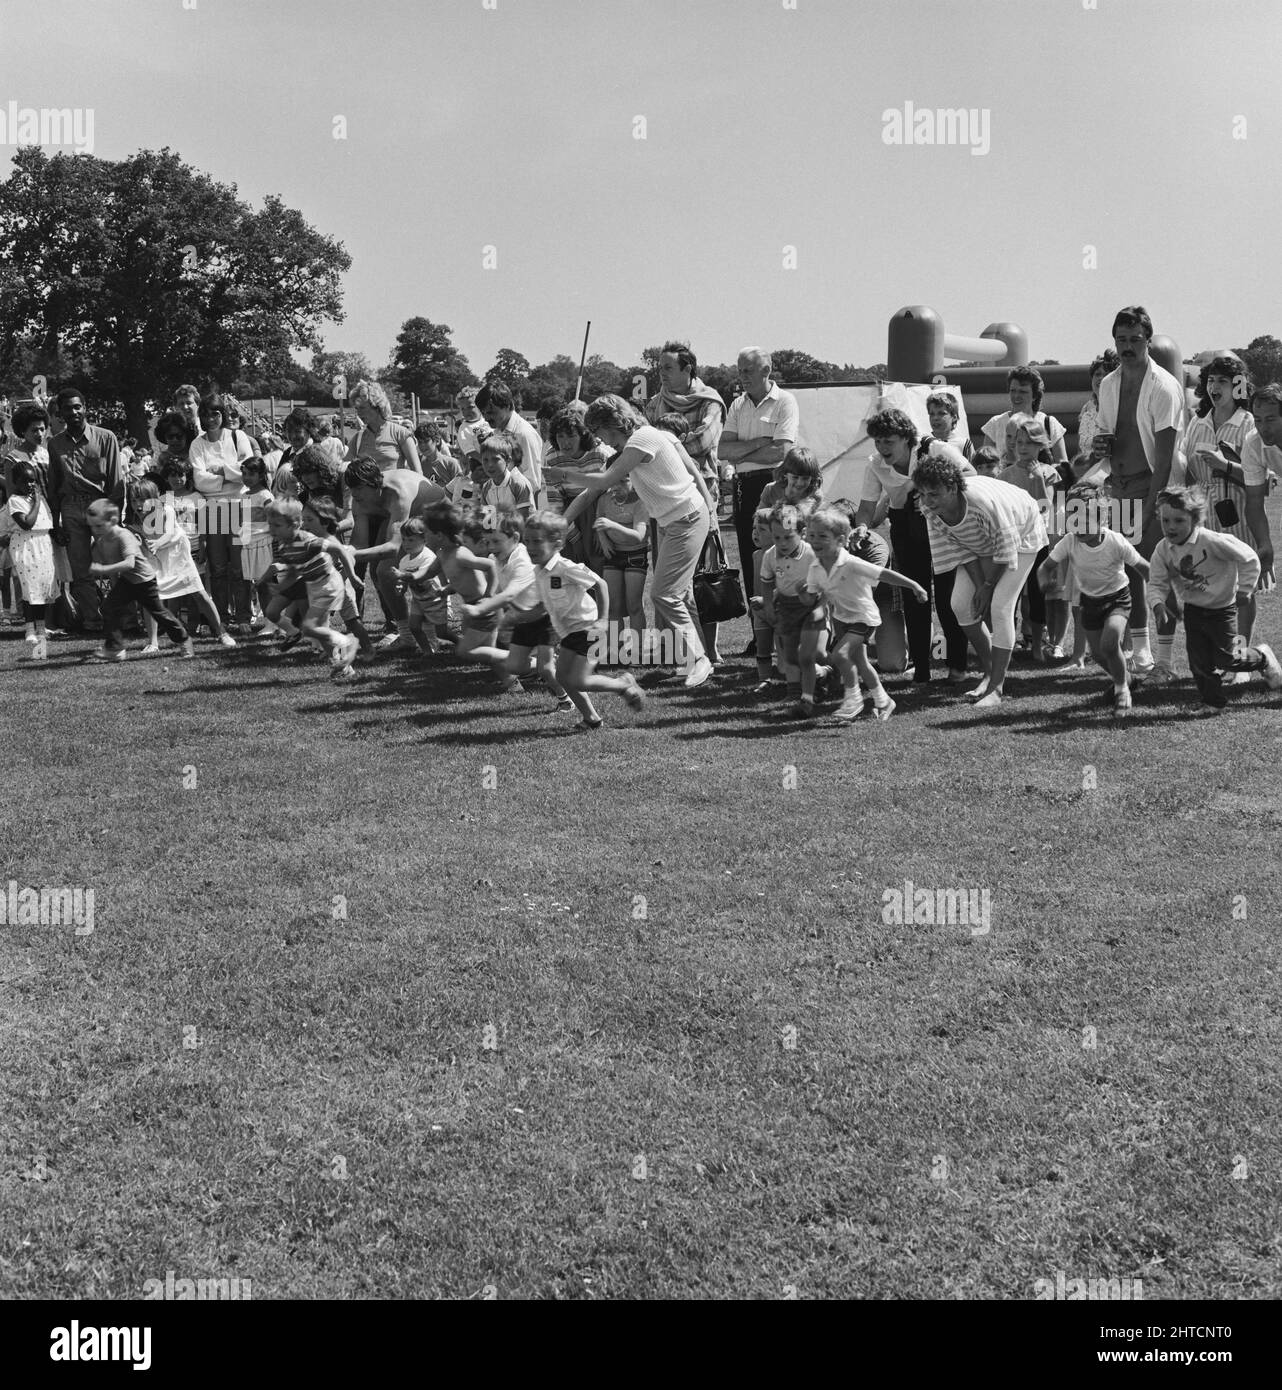 Laing Sports Ground, Rowley Lane, Elstree, Barnett, Londres, 21/06/1986. Le début de l'une des courses pour enfants lors de la Journée de la famille 1986 au terrain de sport de Laing. Plus de 2500 personnes ont assisté à la Journée de la famille et ont recueilli plus de xa3 700 personnes pour l'organisme de bienfaisance désigné de la British Heart Foundation cette année-là. Attractions incluses ; les invités ont participé à la diffusion du programme télévisé Grange Hill, un château bondissant, des manèges à ânes, des spectacles de Punch et Judy, Pierre le Clown, des courses pour enfants, des courses de cascades à l'aveugle et des tournois de golf et de football à six. Banque D'Images